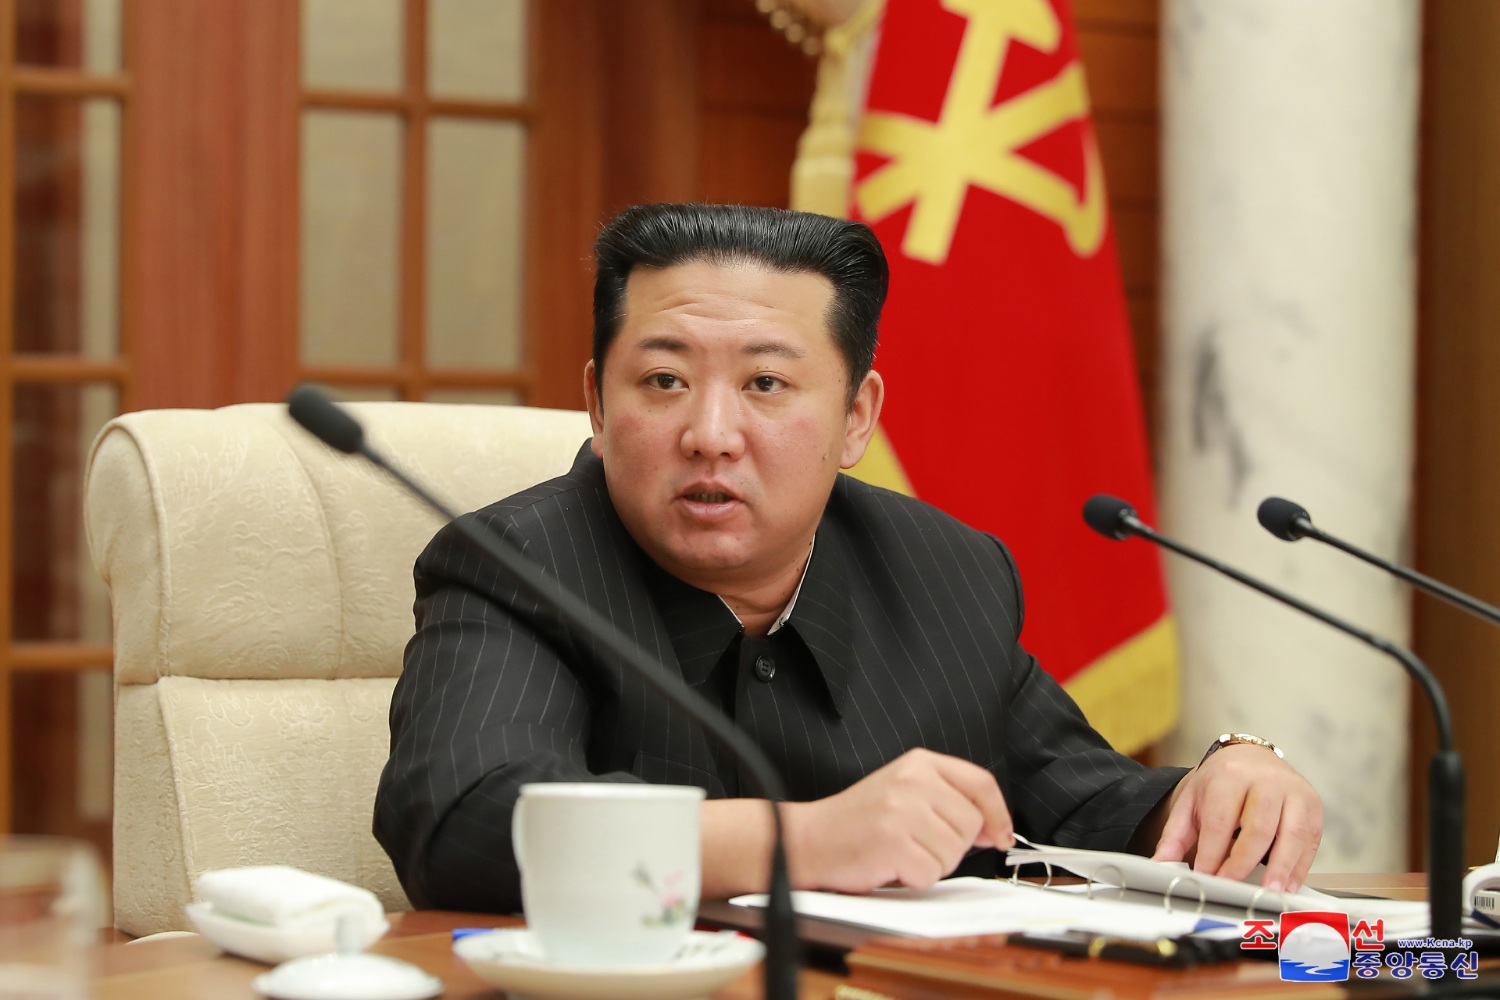 북한 핵실험 ICBM 시험발사 재개 시사, "중지했던 활동 재가동 검토"